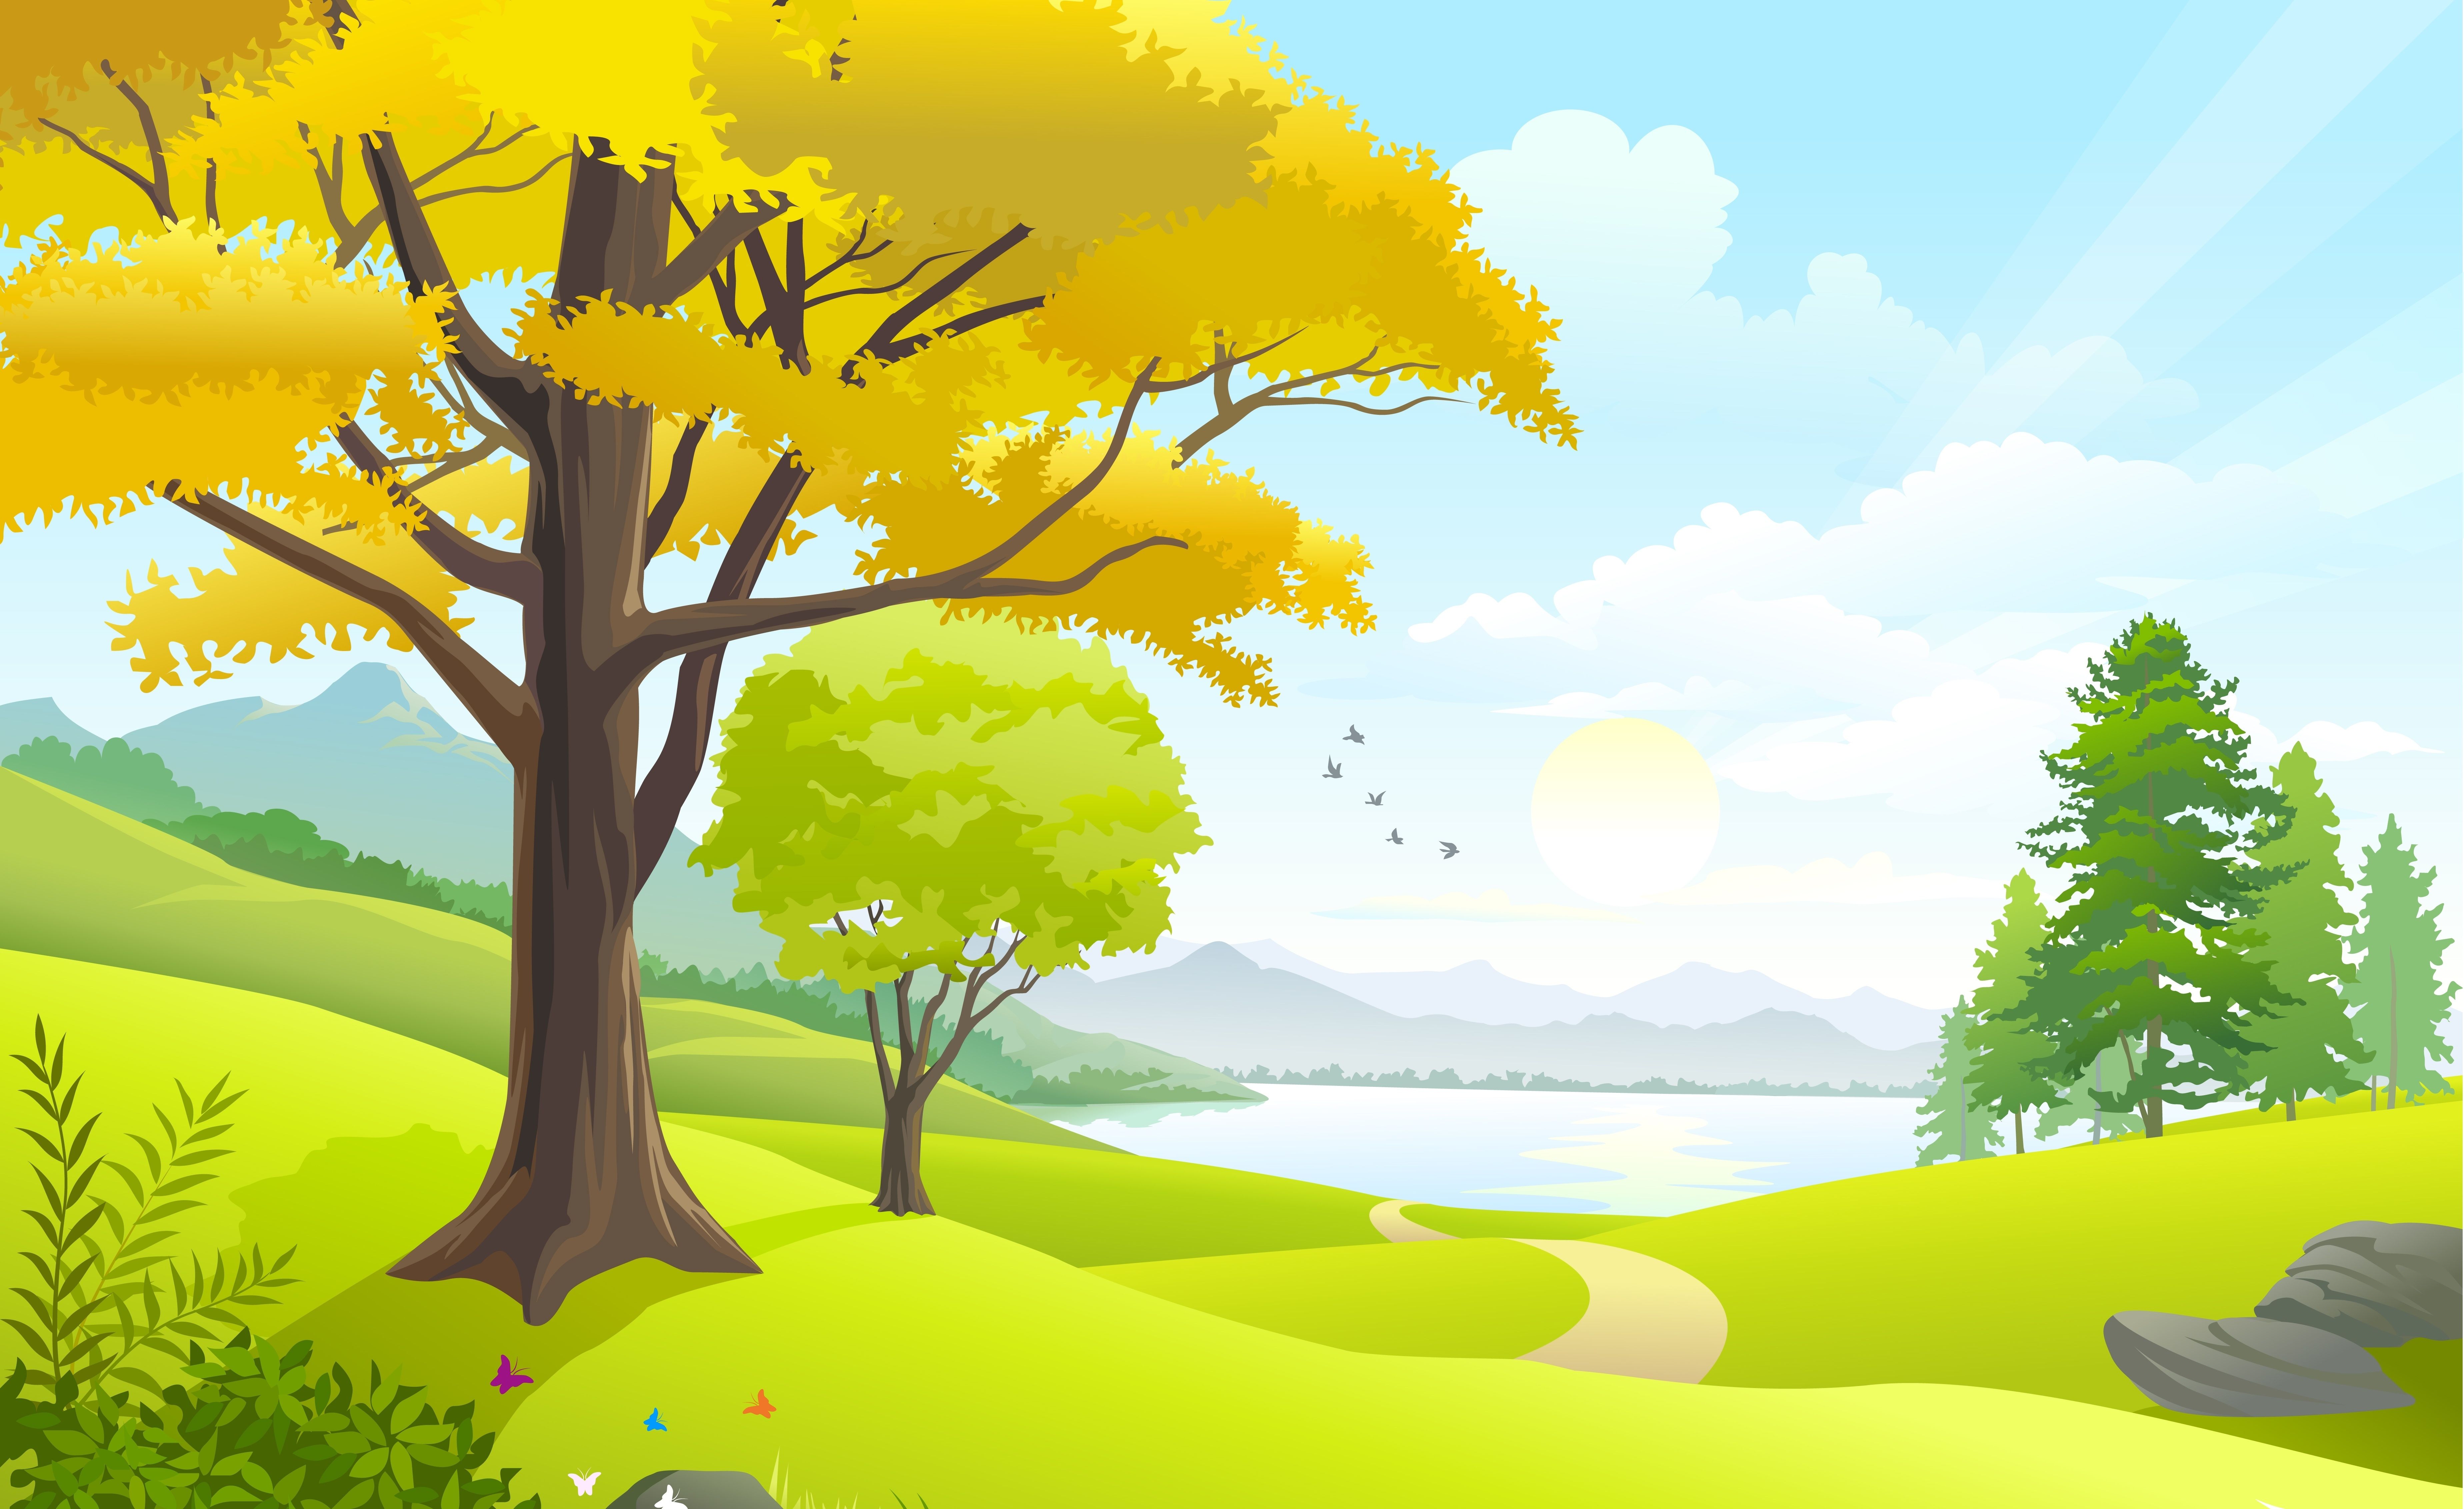 birds, nature, vector art, clouds, trees, lake, sky, grass field, road, sun, landscape desktop wallpaper 23730